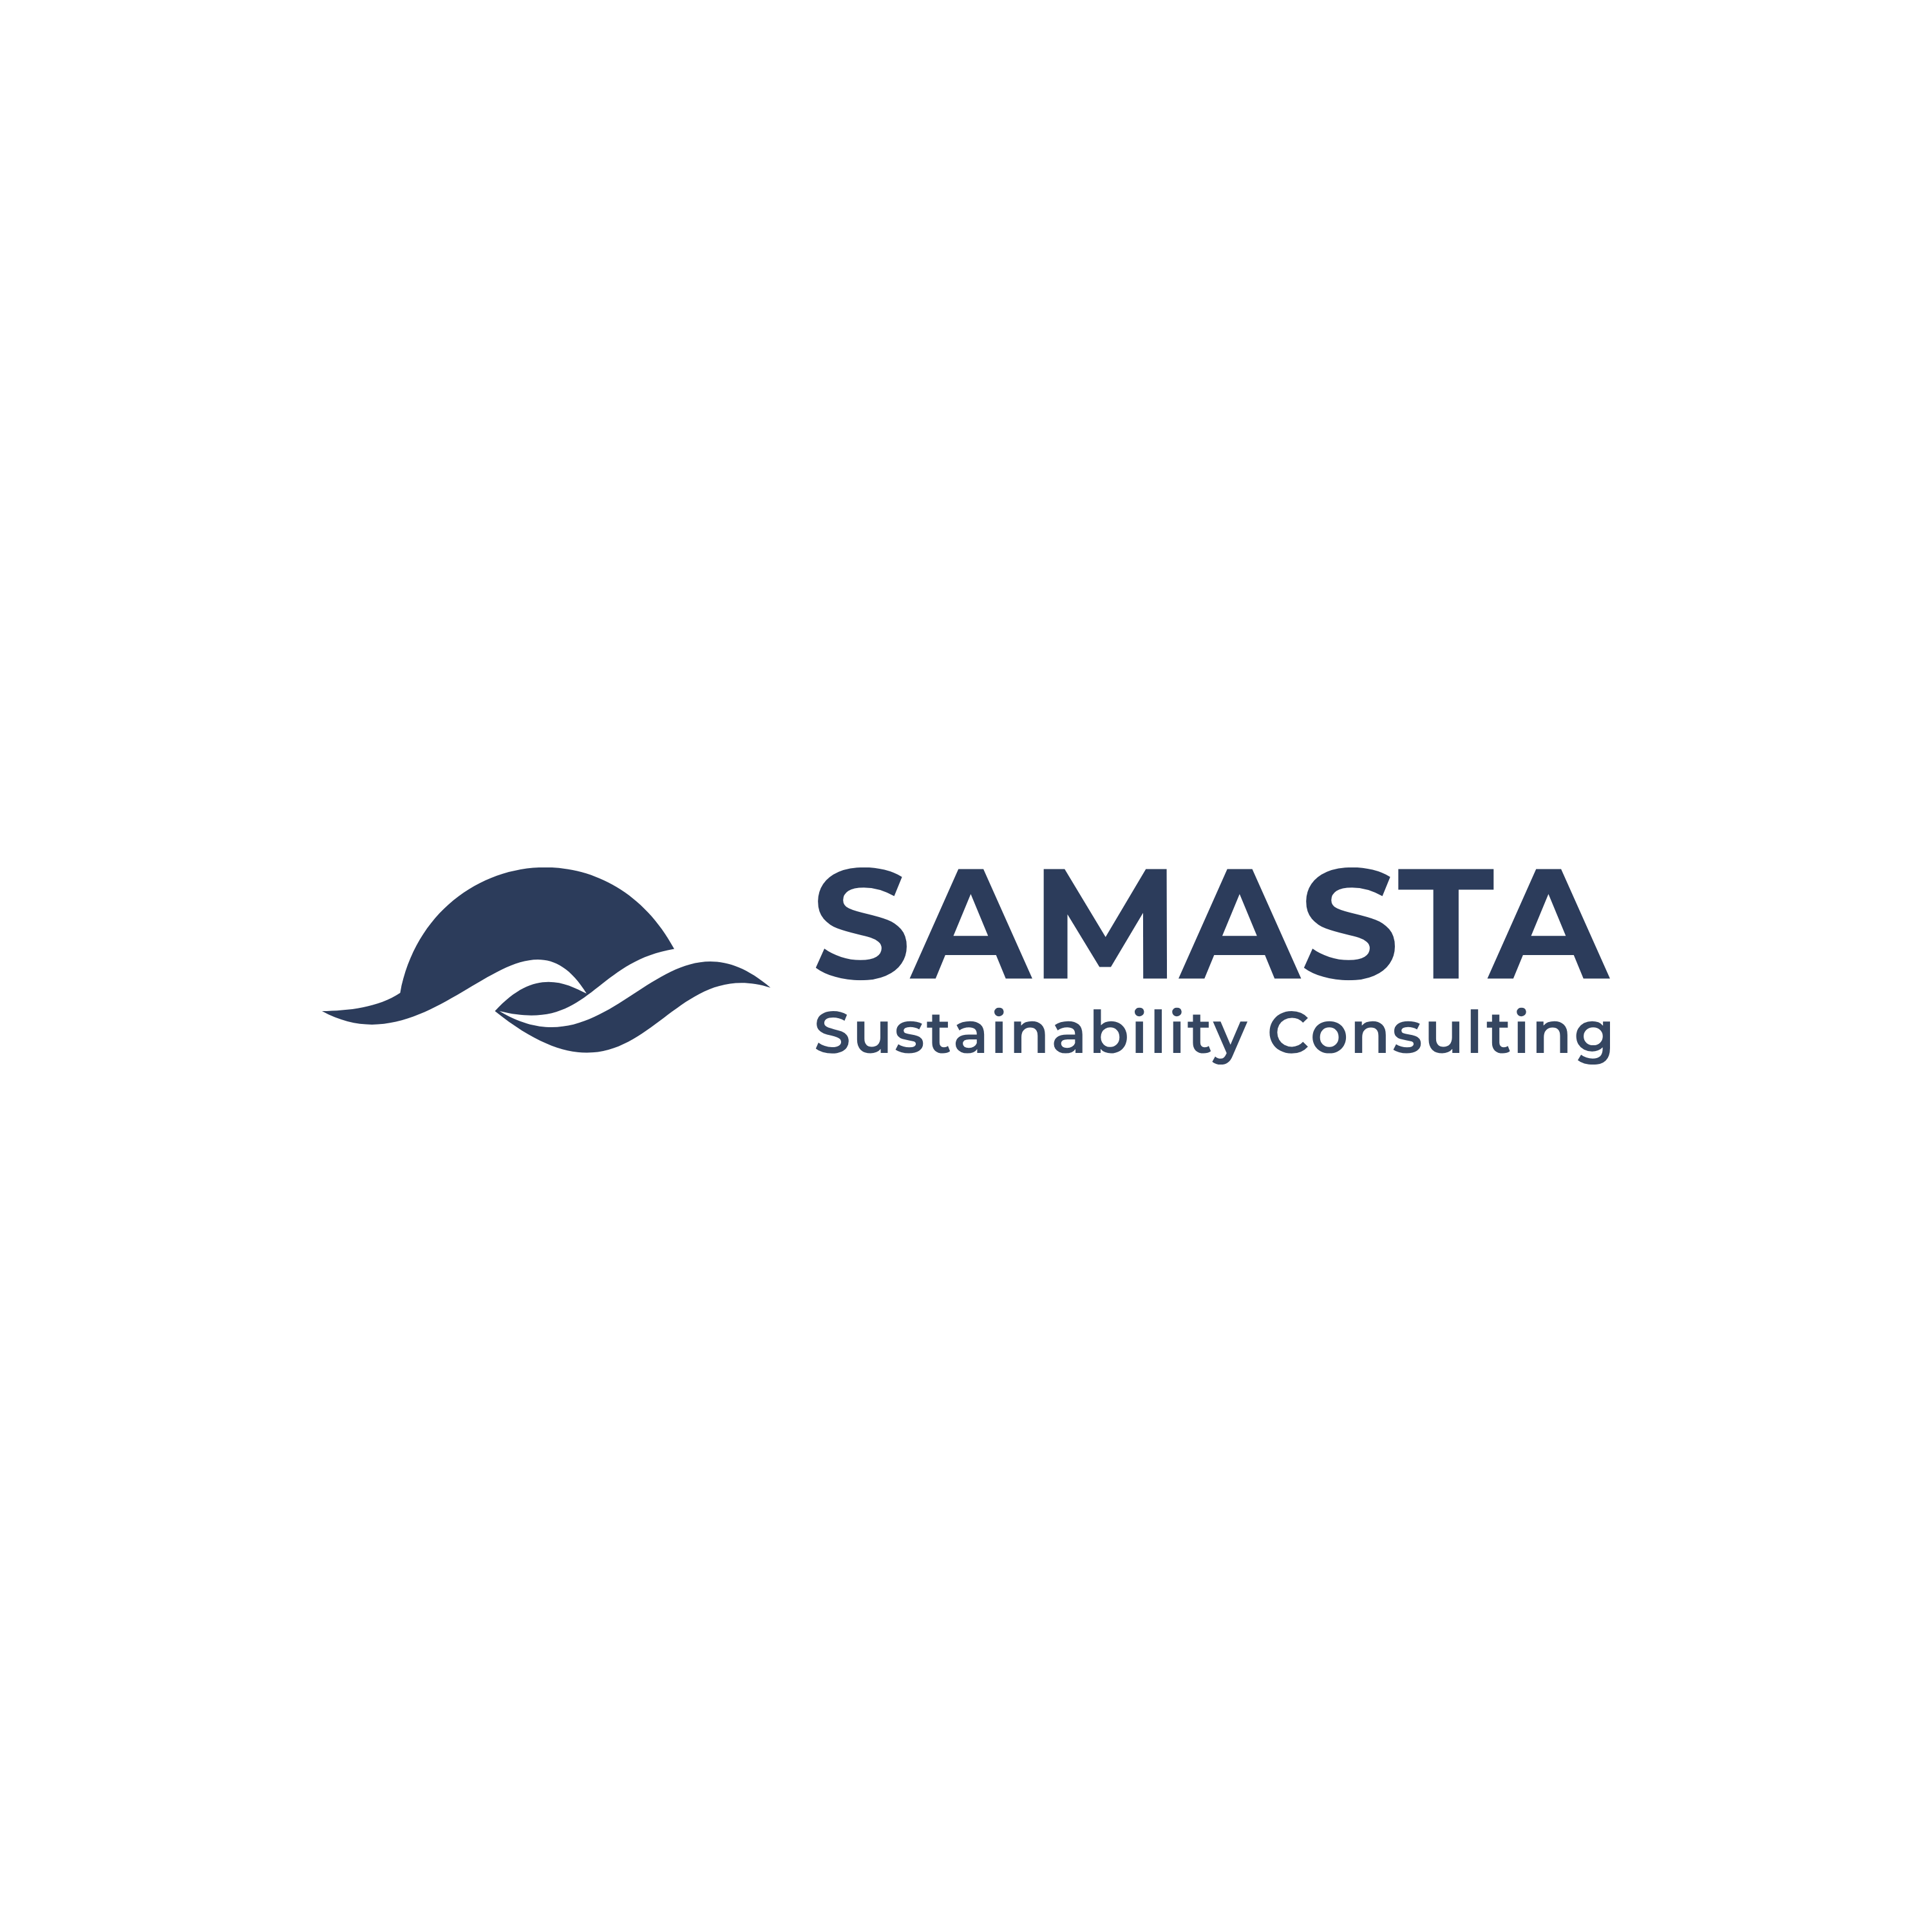 Samasta - Sustainability Consulting